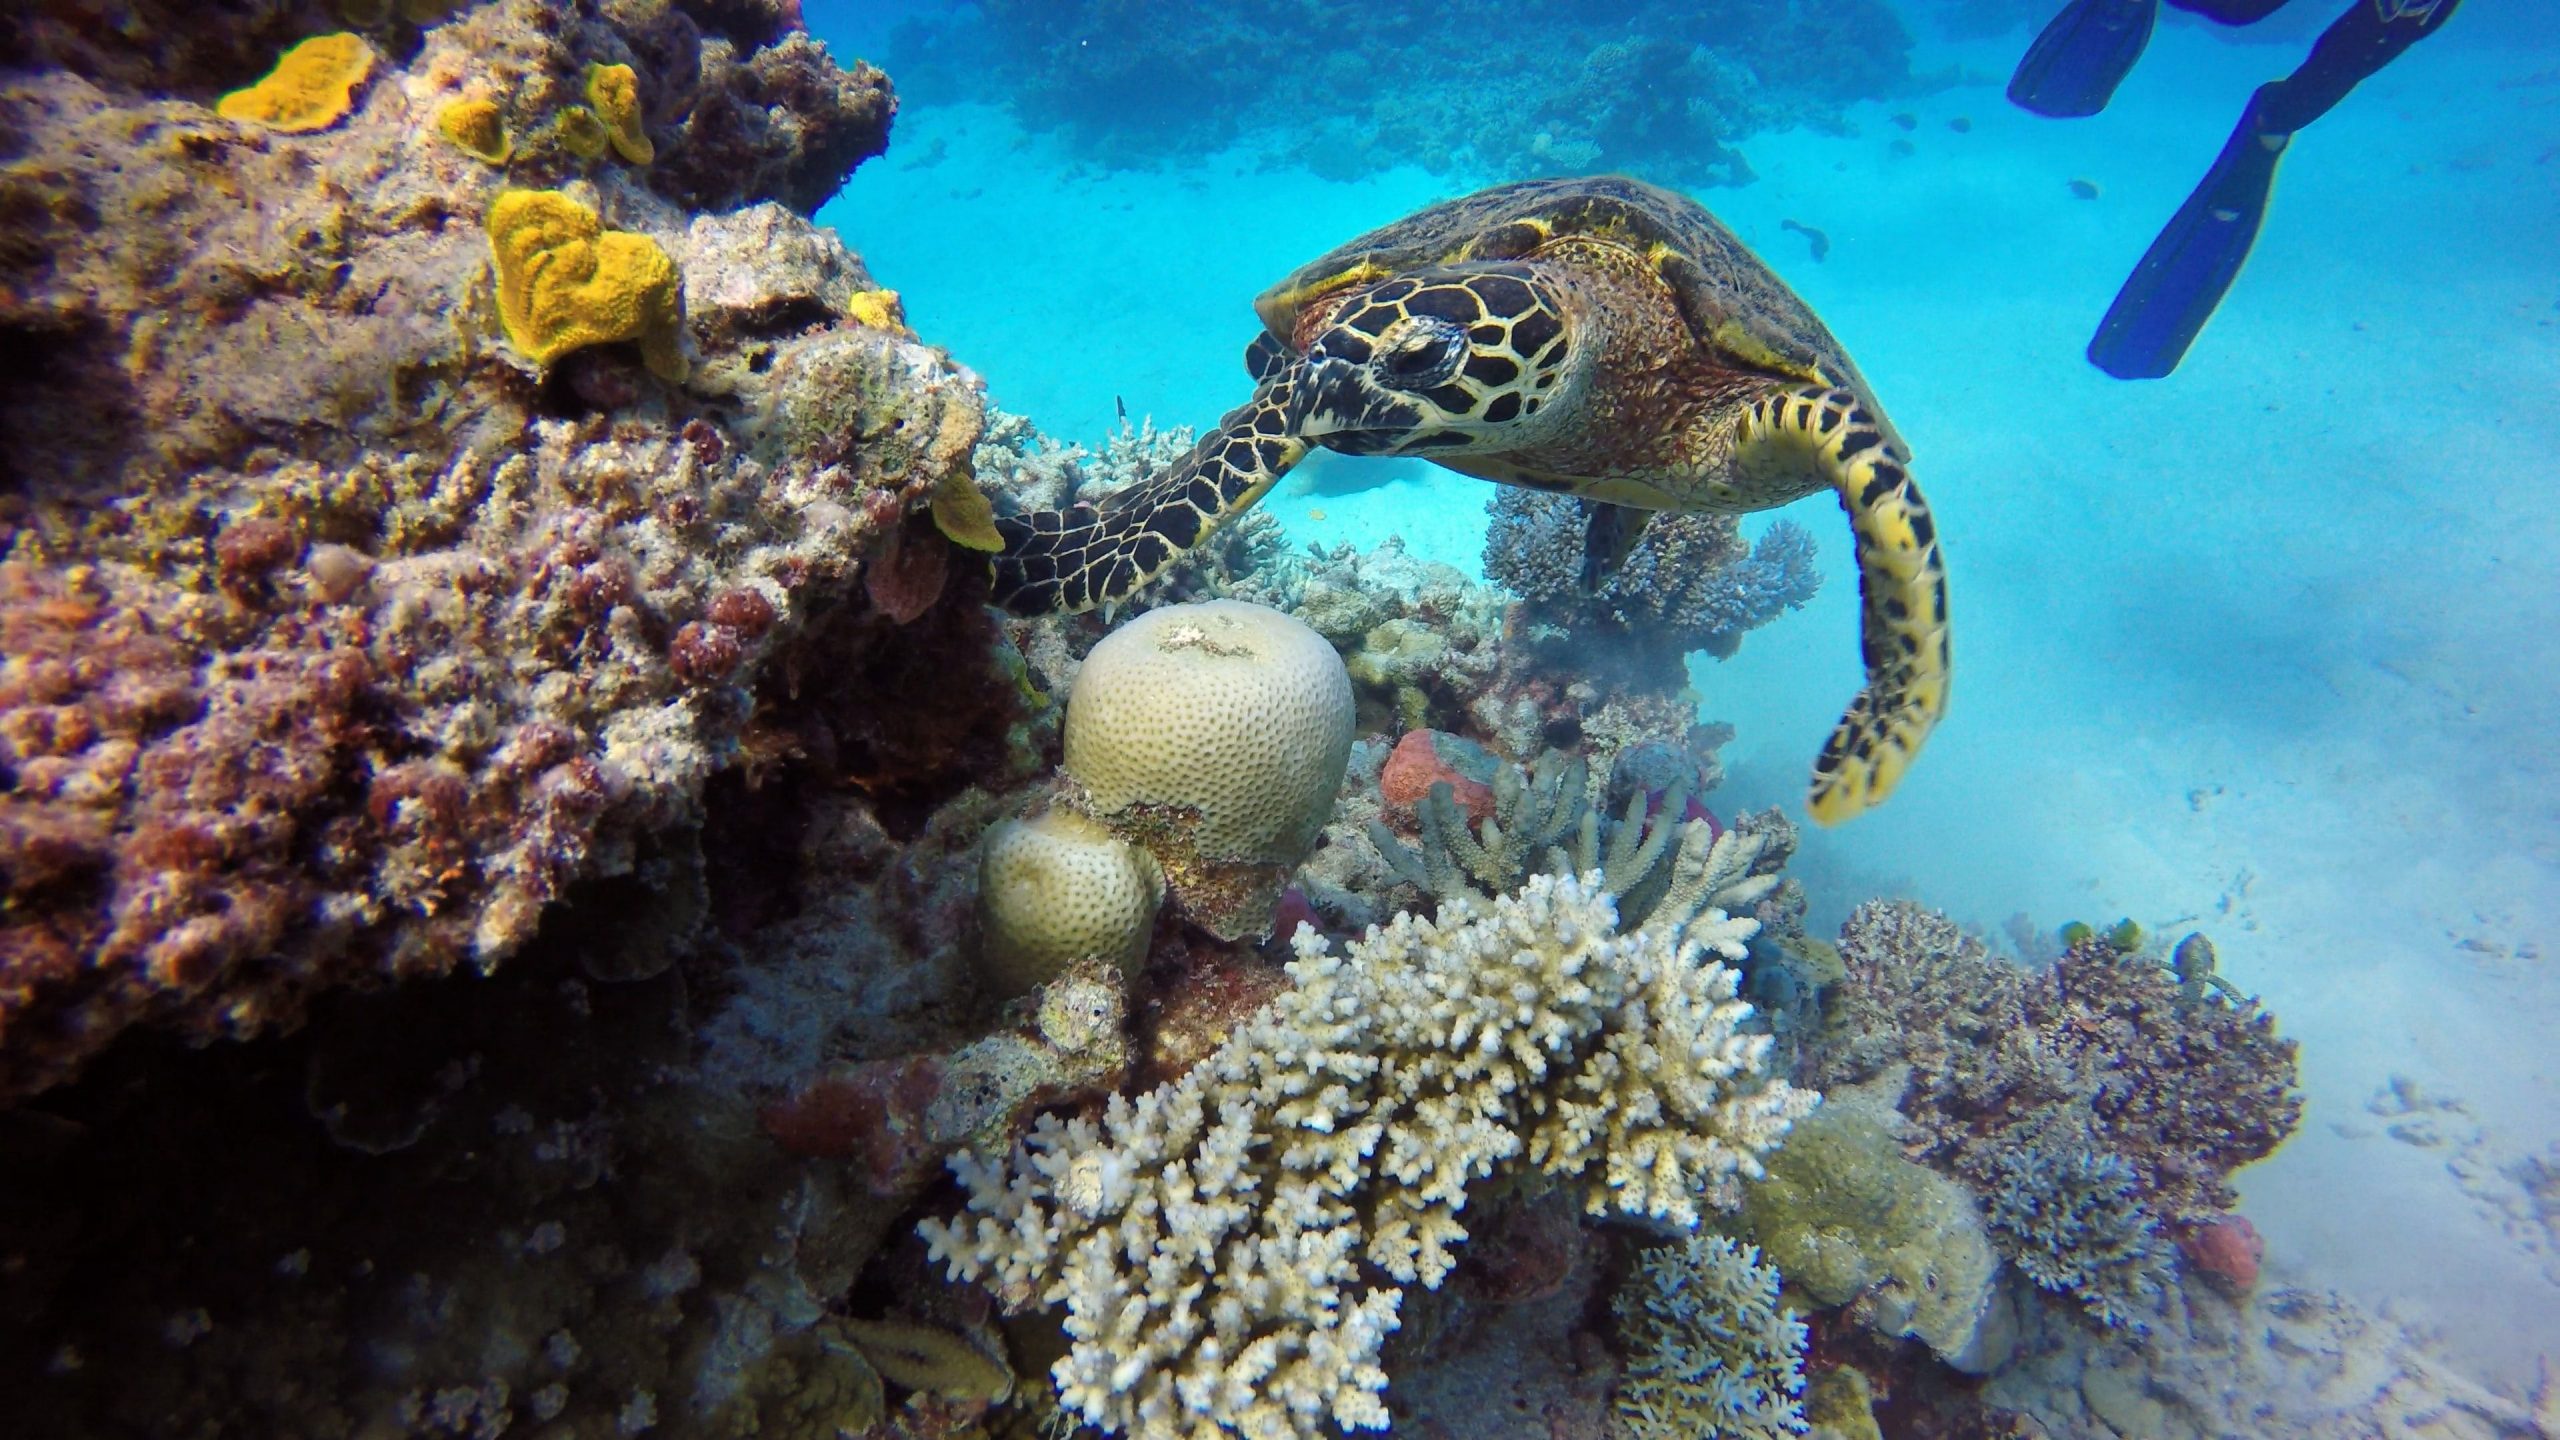 Australia’s Great Barrier Reef evades UNESCO’s ‘danger list’